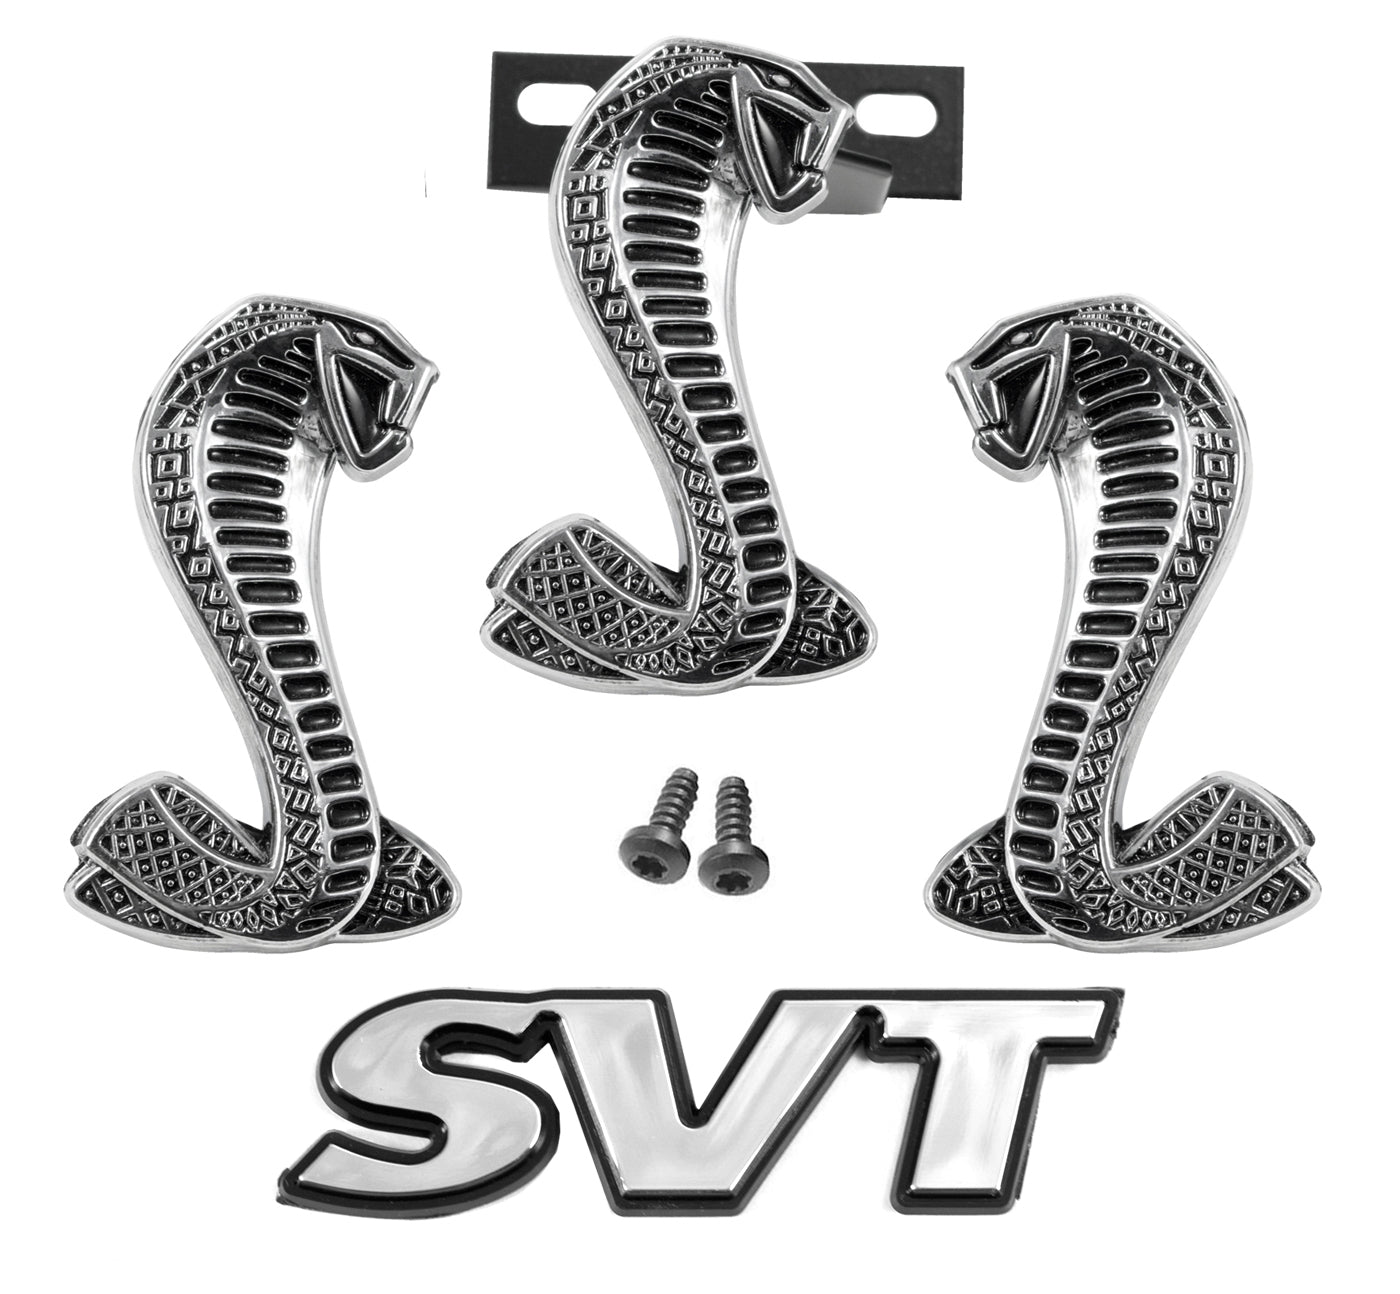 1994-2004 Mustang Cobra Snake Fender 4 Piece Grille SVT Emblems